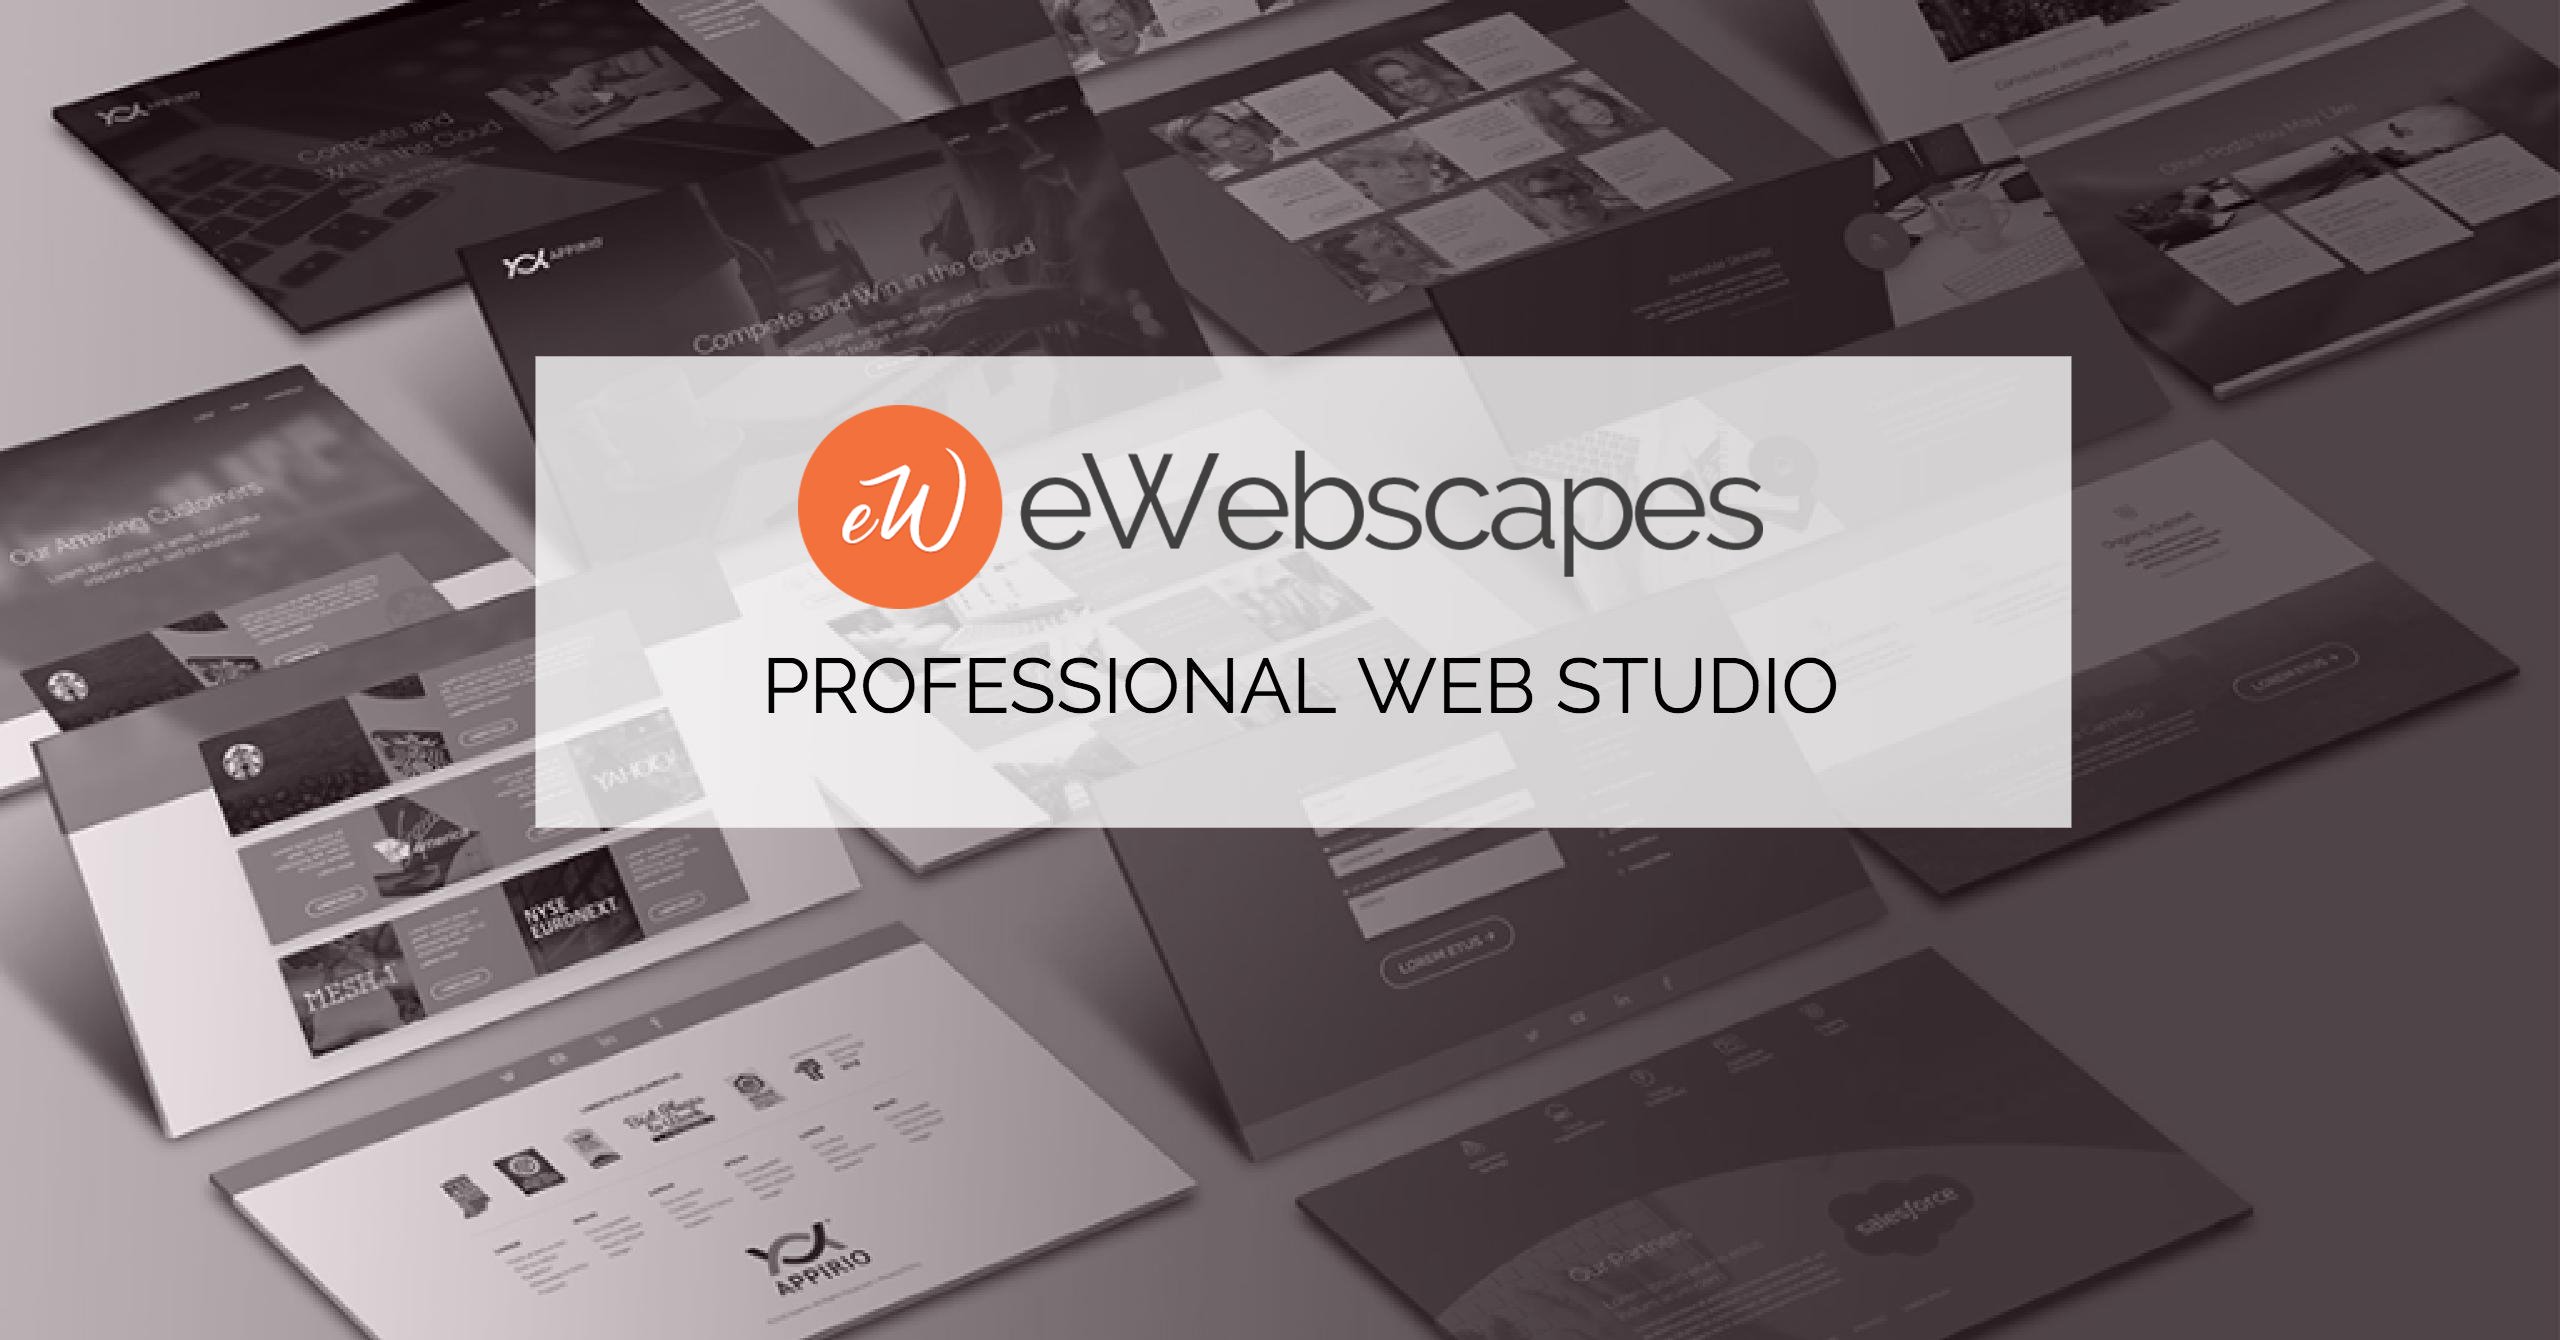 (c) Ewebscapes.com